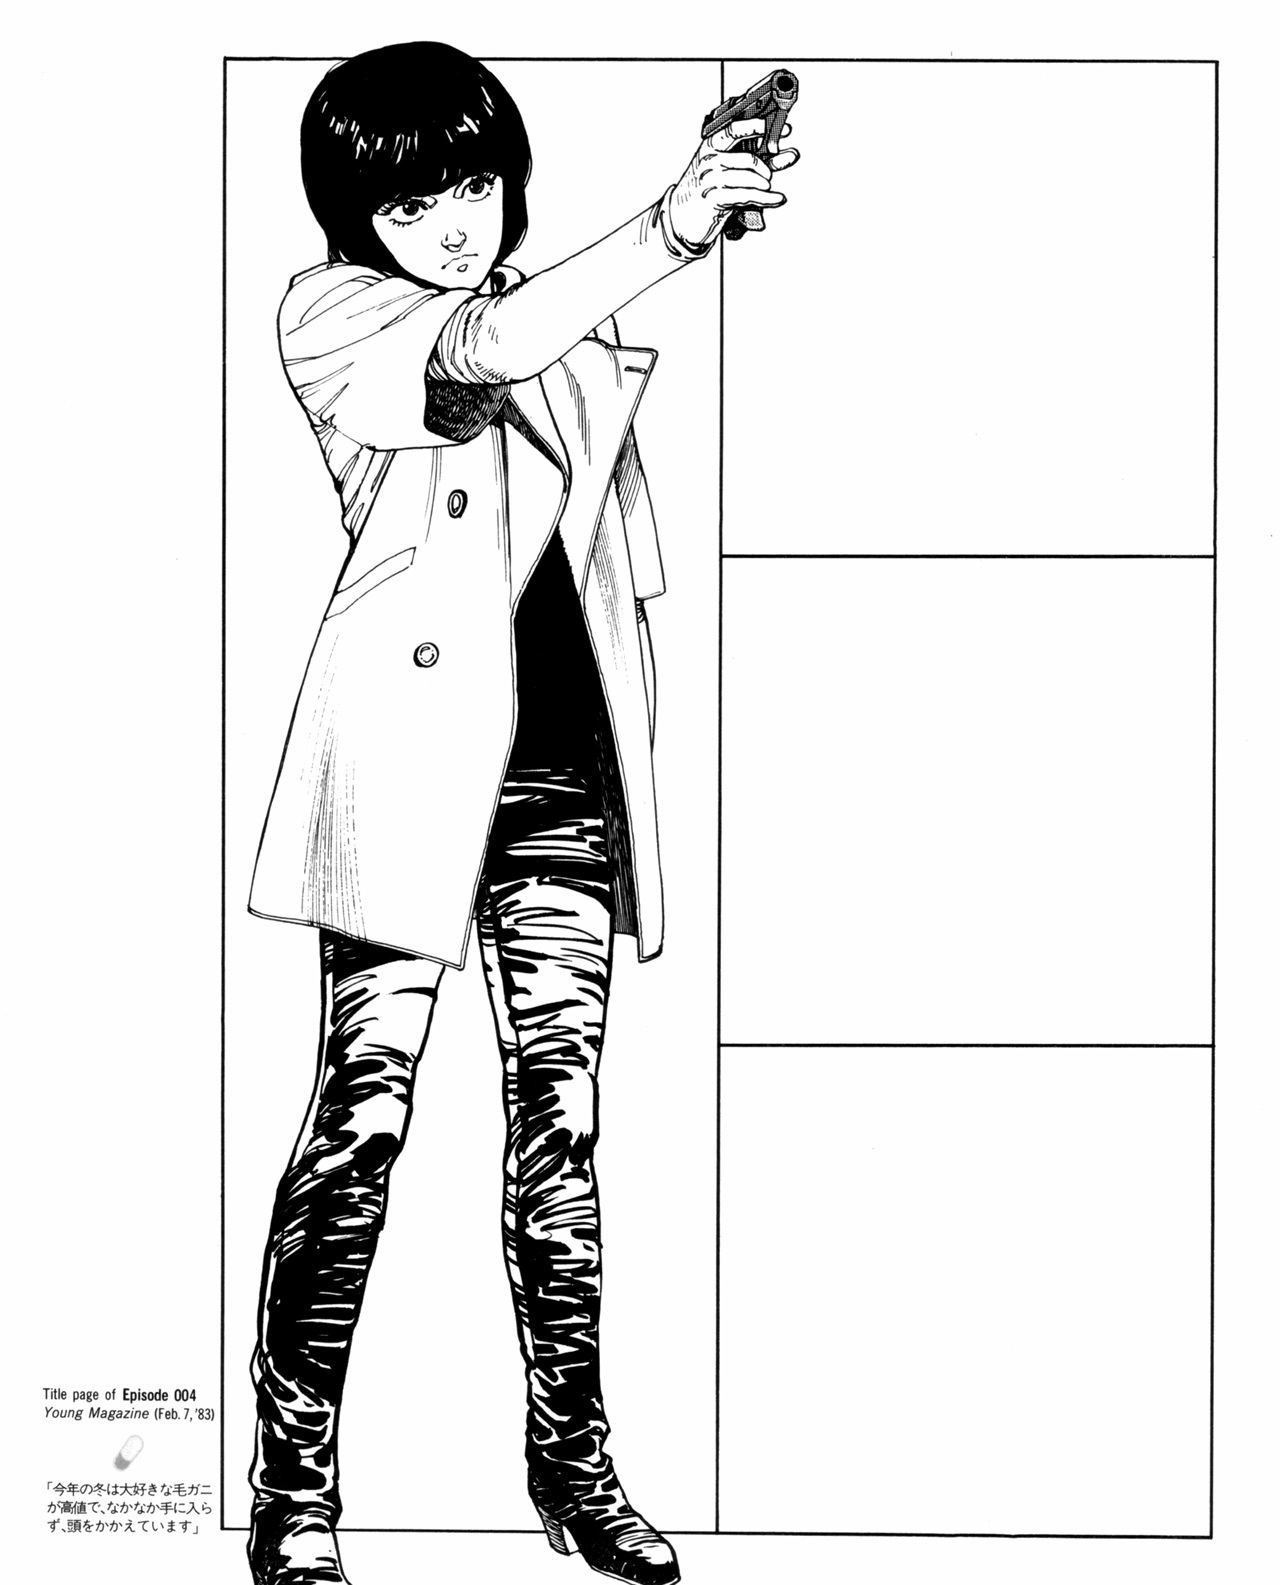 kei from the manga holding her gun